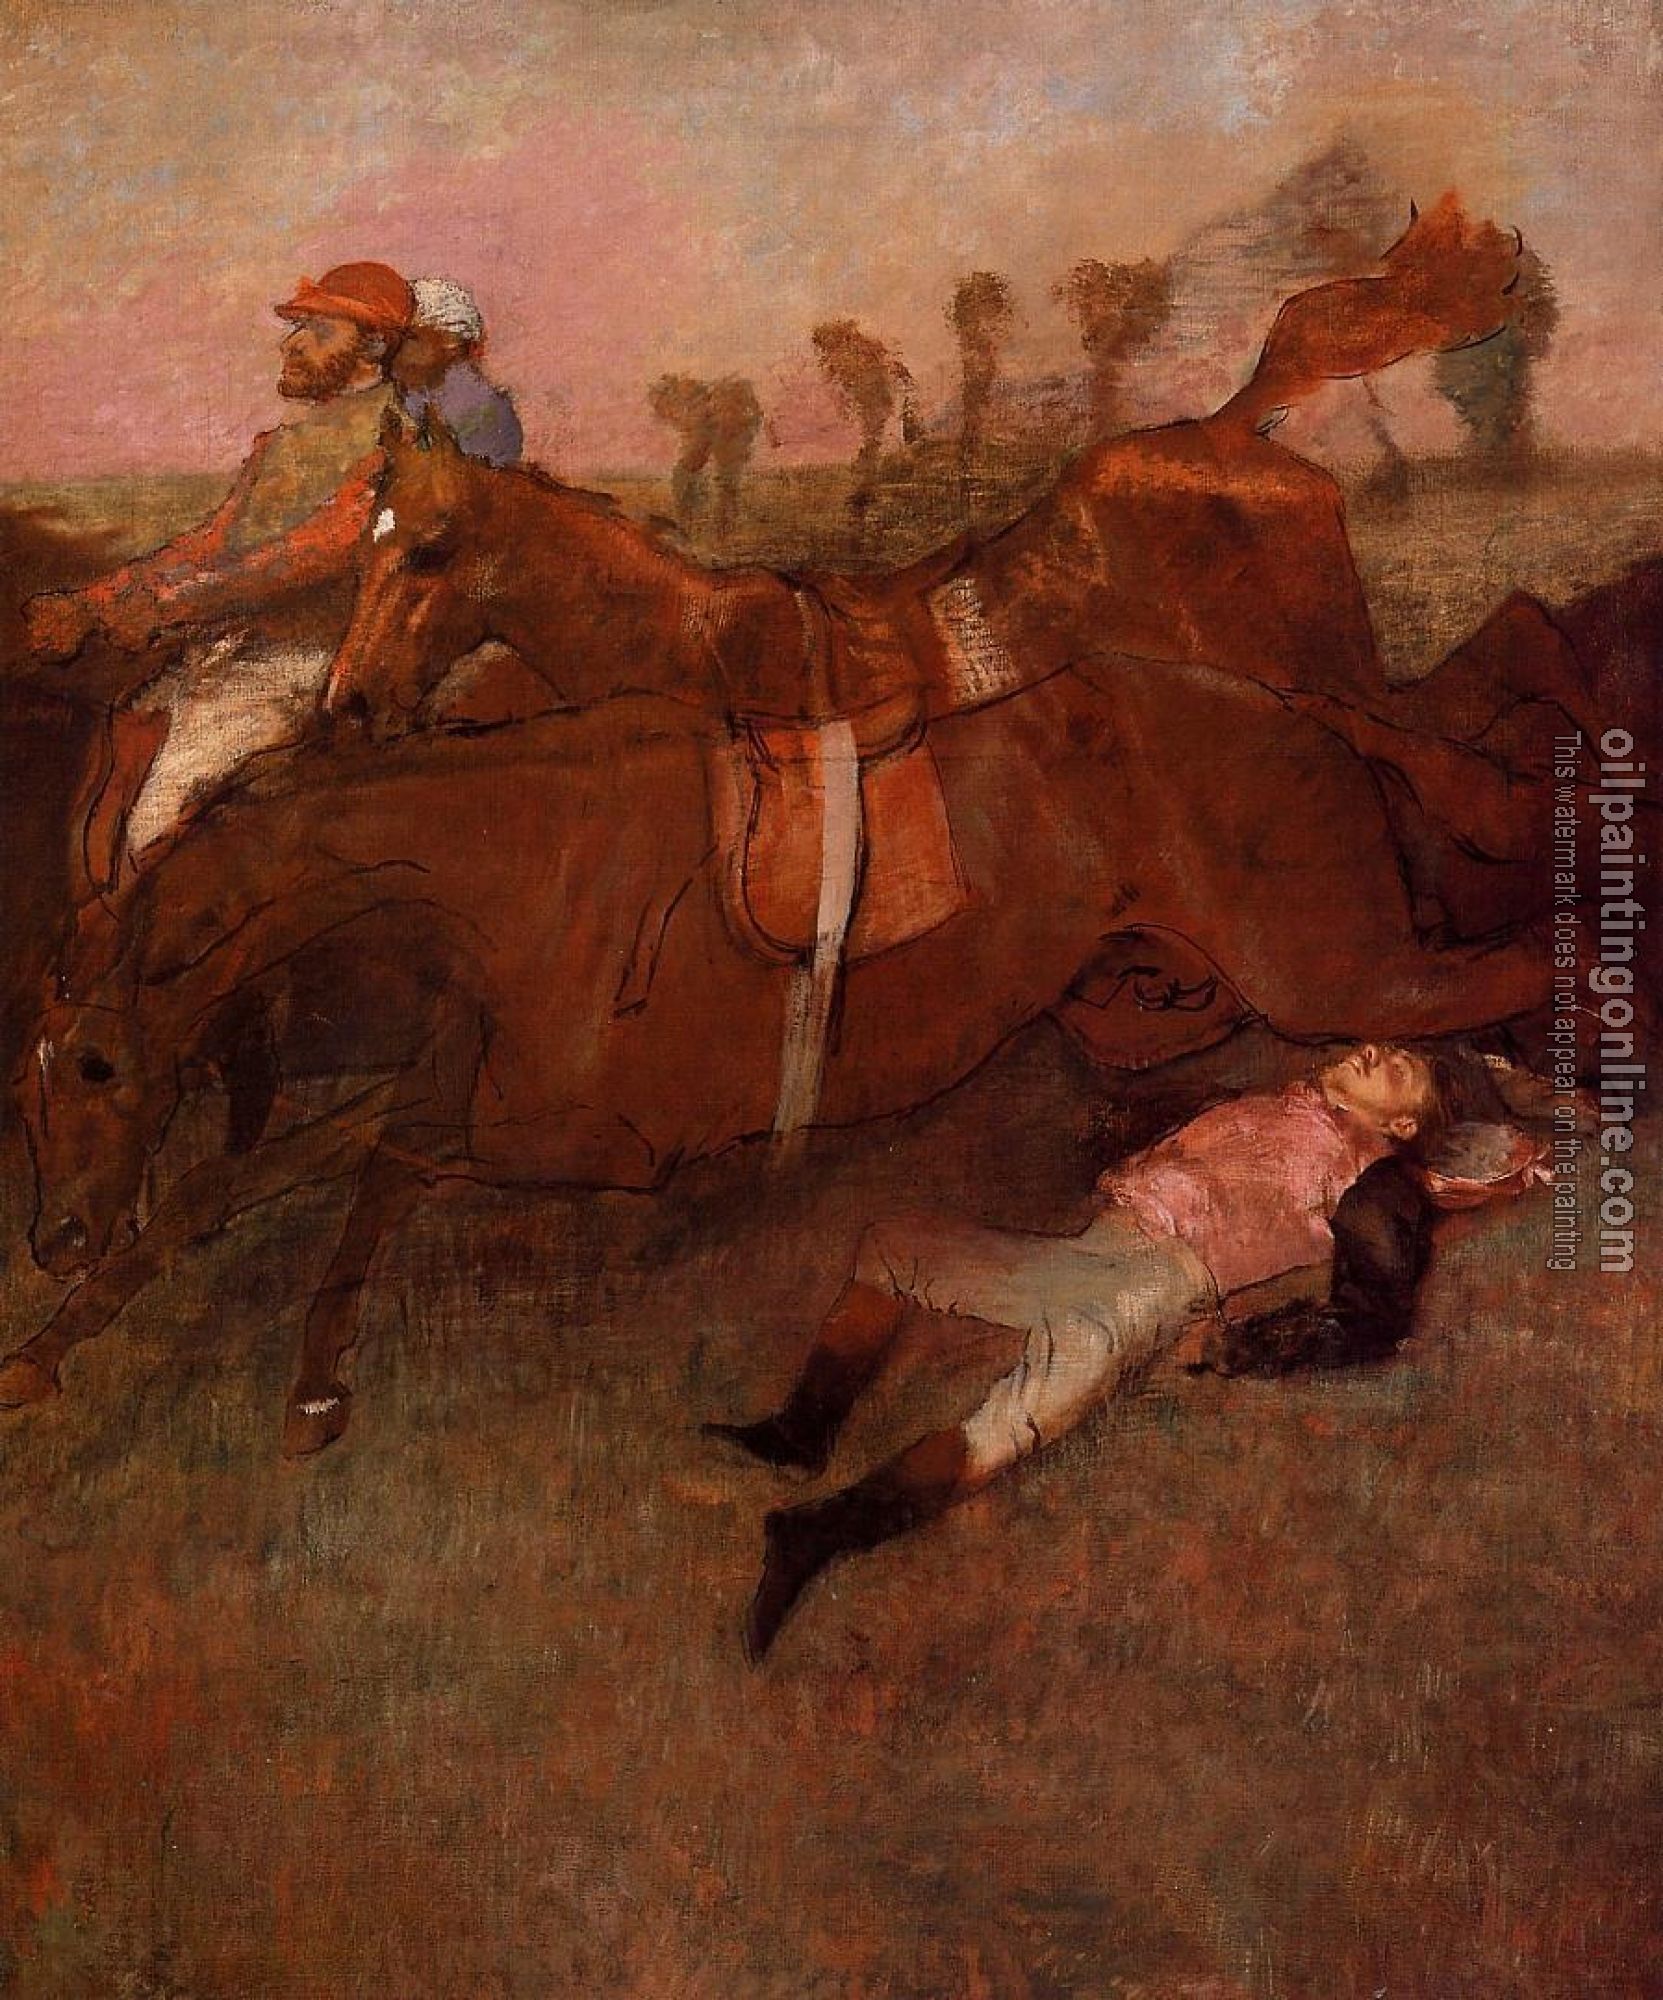 Degas, Edgar - Scene from the Steeplechase   the Fallen Jockey